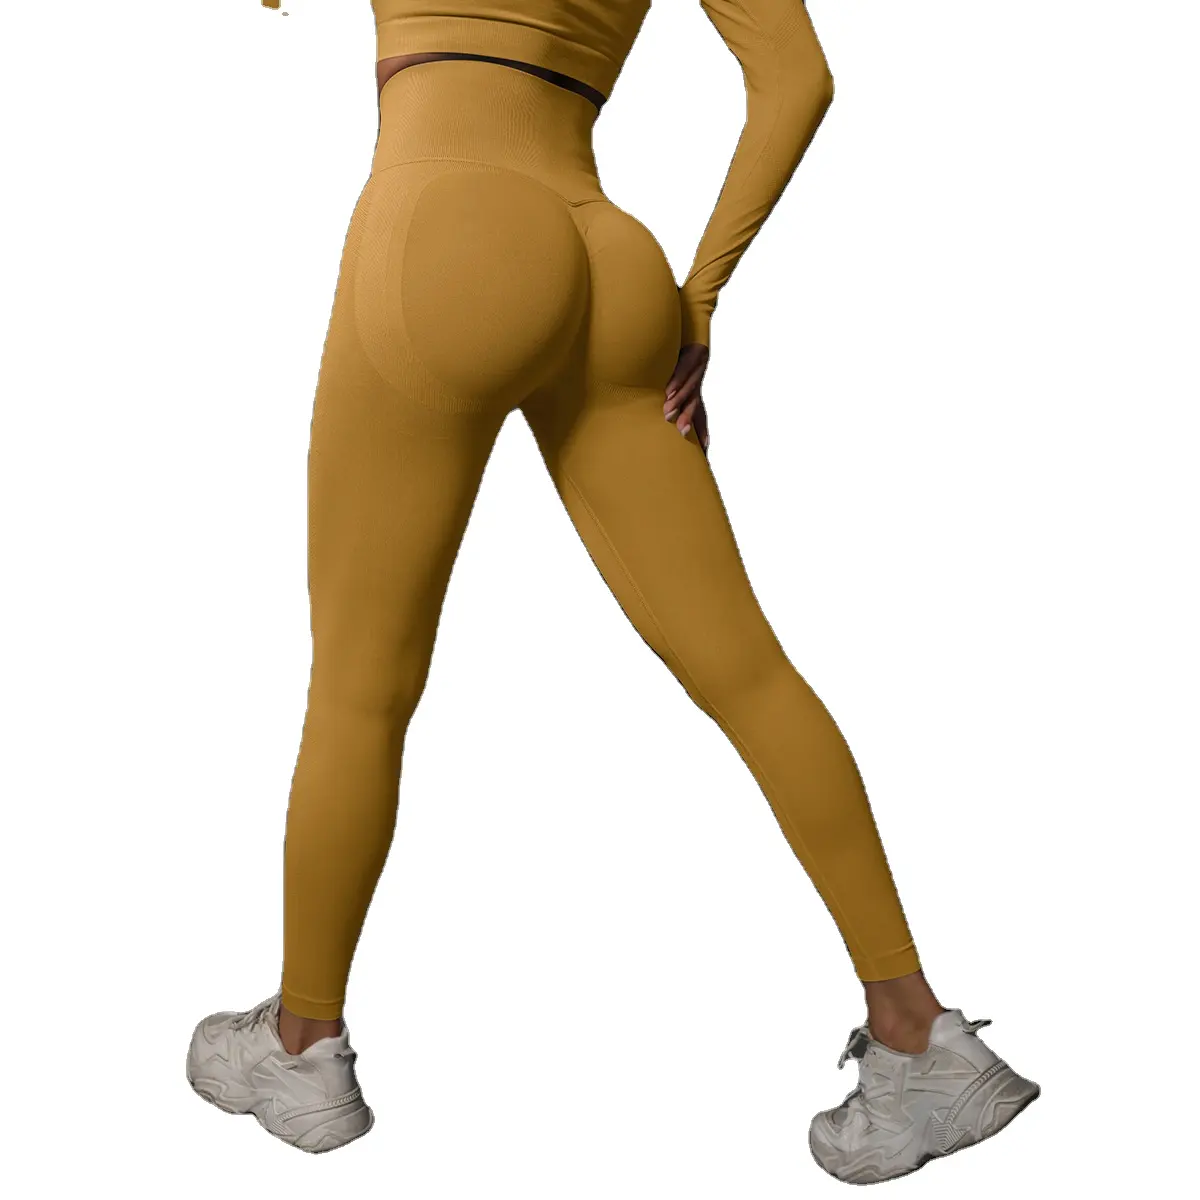 कस्टम फिटनेस कपड़े व्यायाम खेलों एल काम बाहर परिधान जिम कपड़े महिलाओं सहज कुचलना लेगिंग